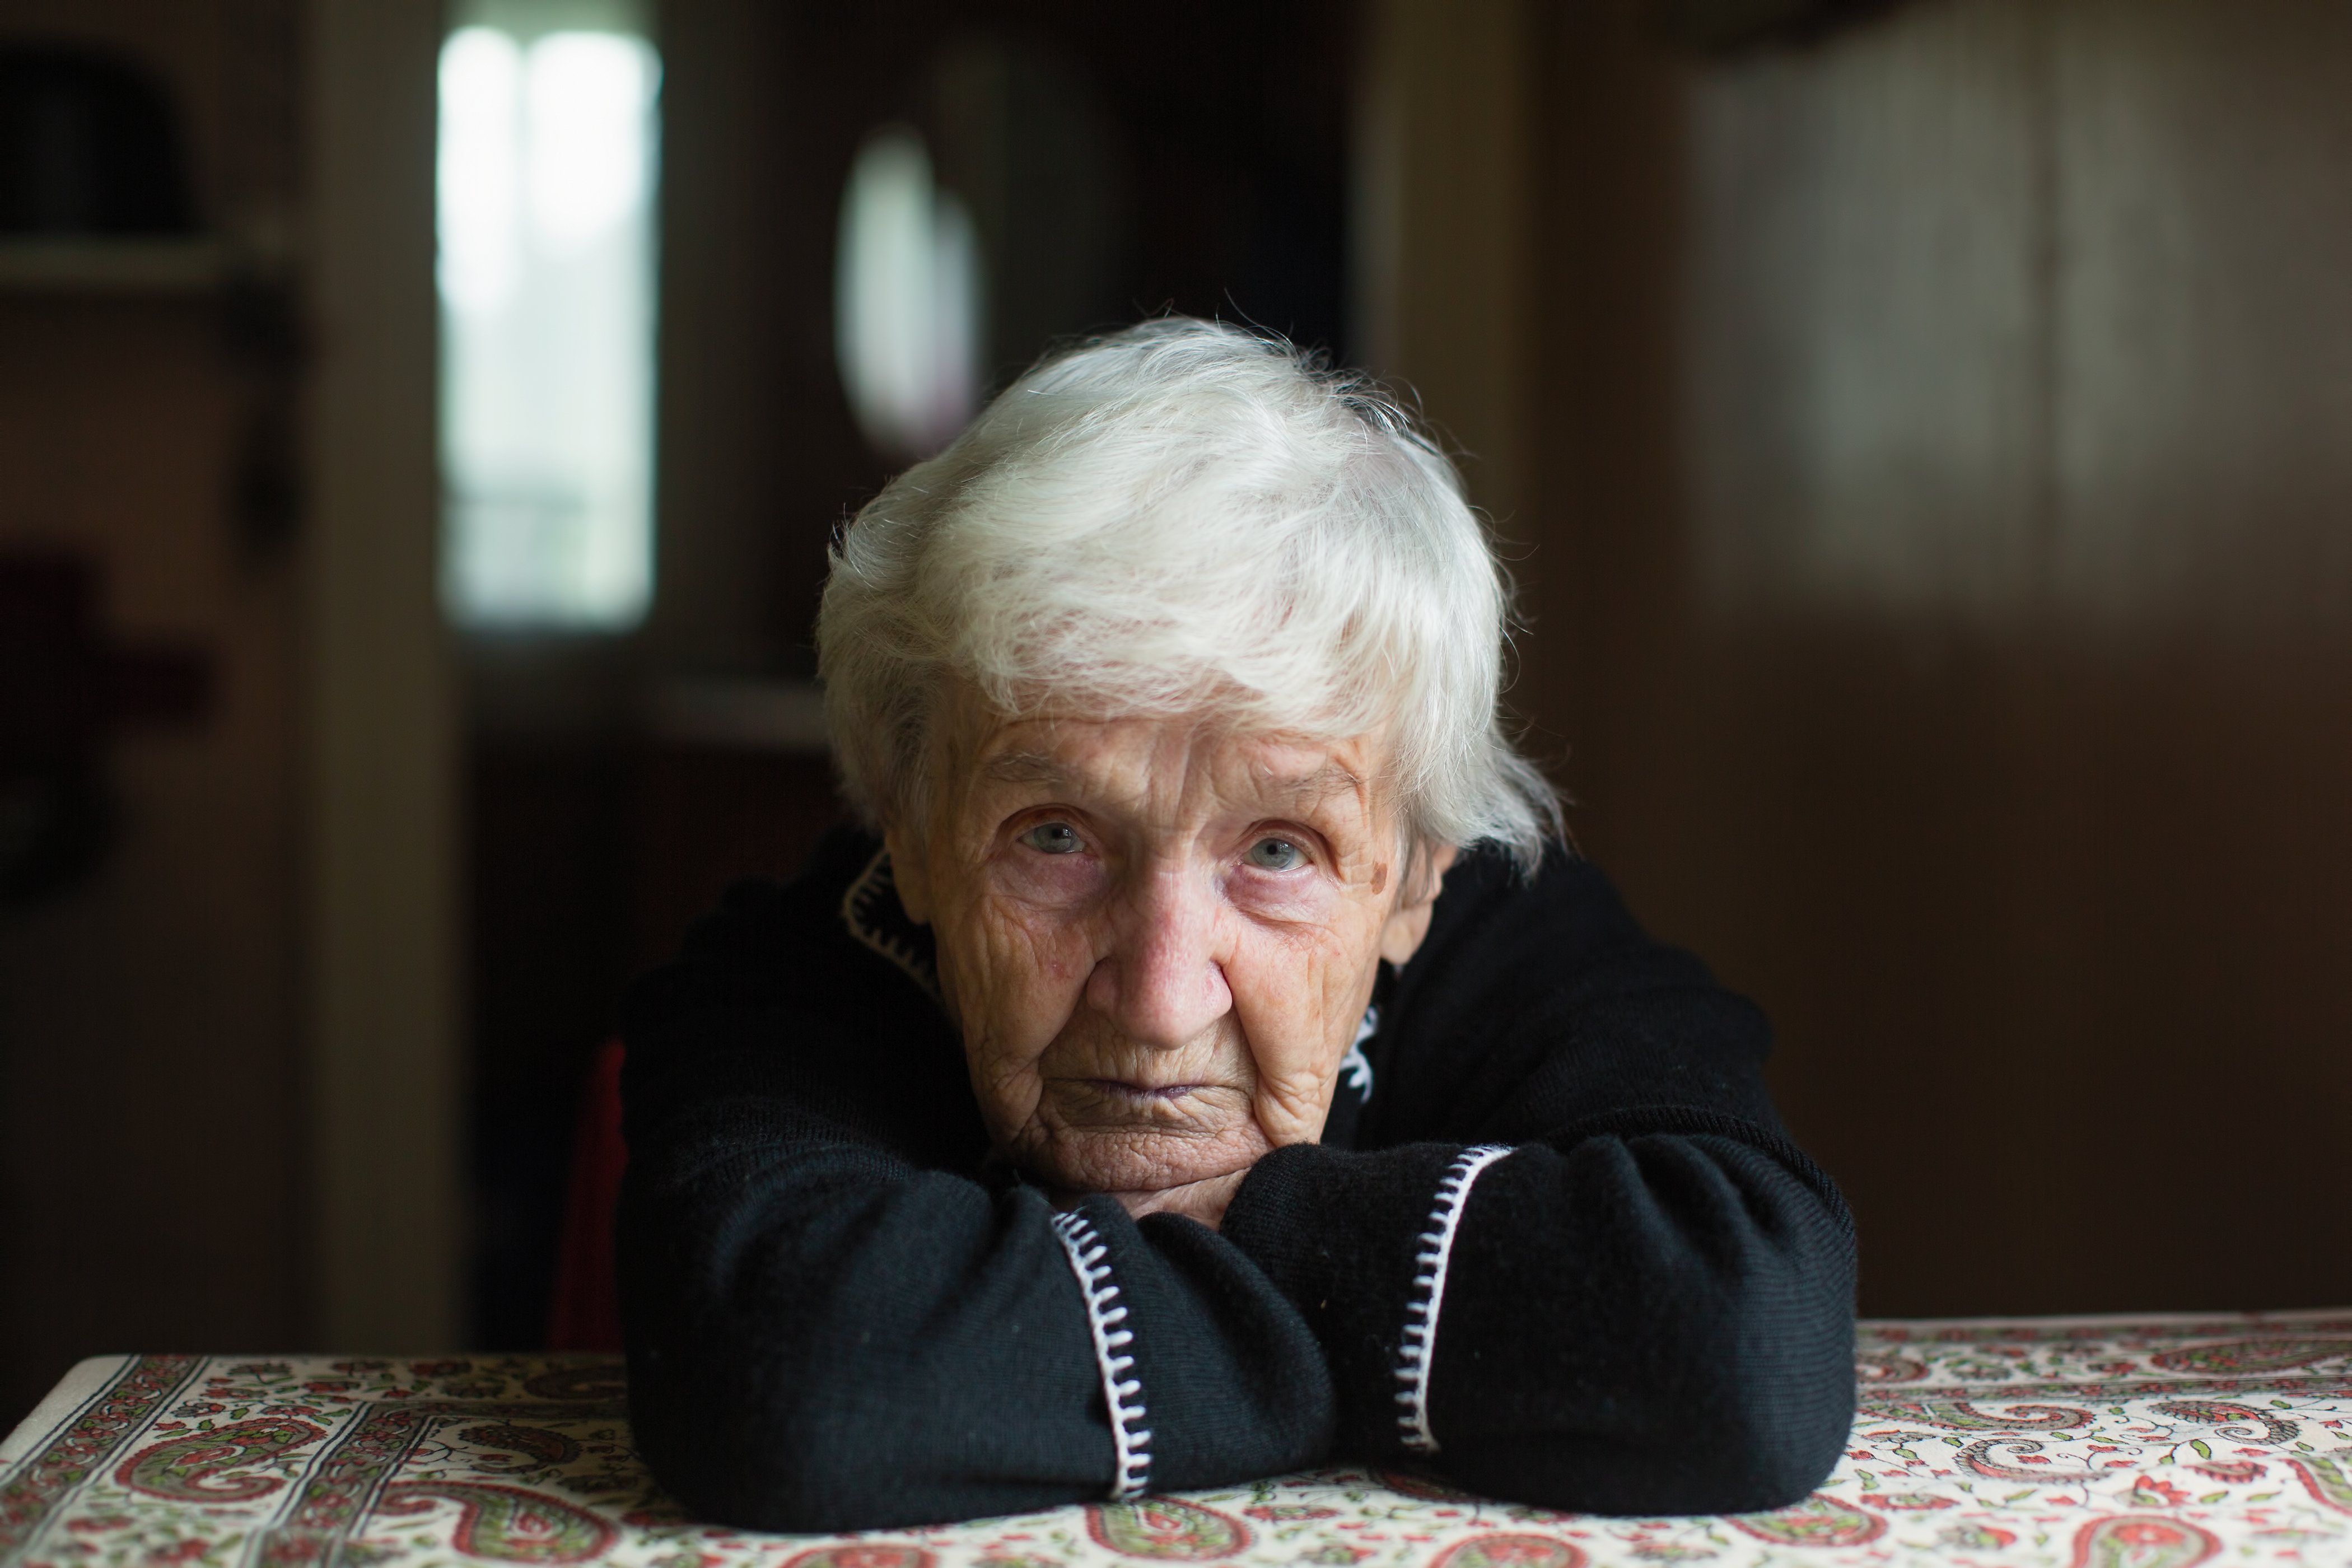 Portrait d'une femme âgée assise chez elle | Source : Shutterstock